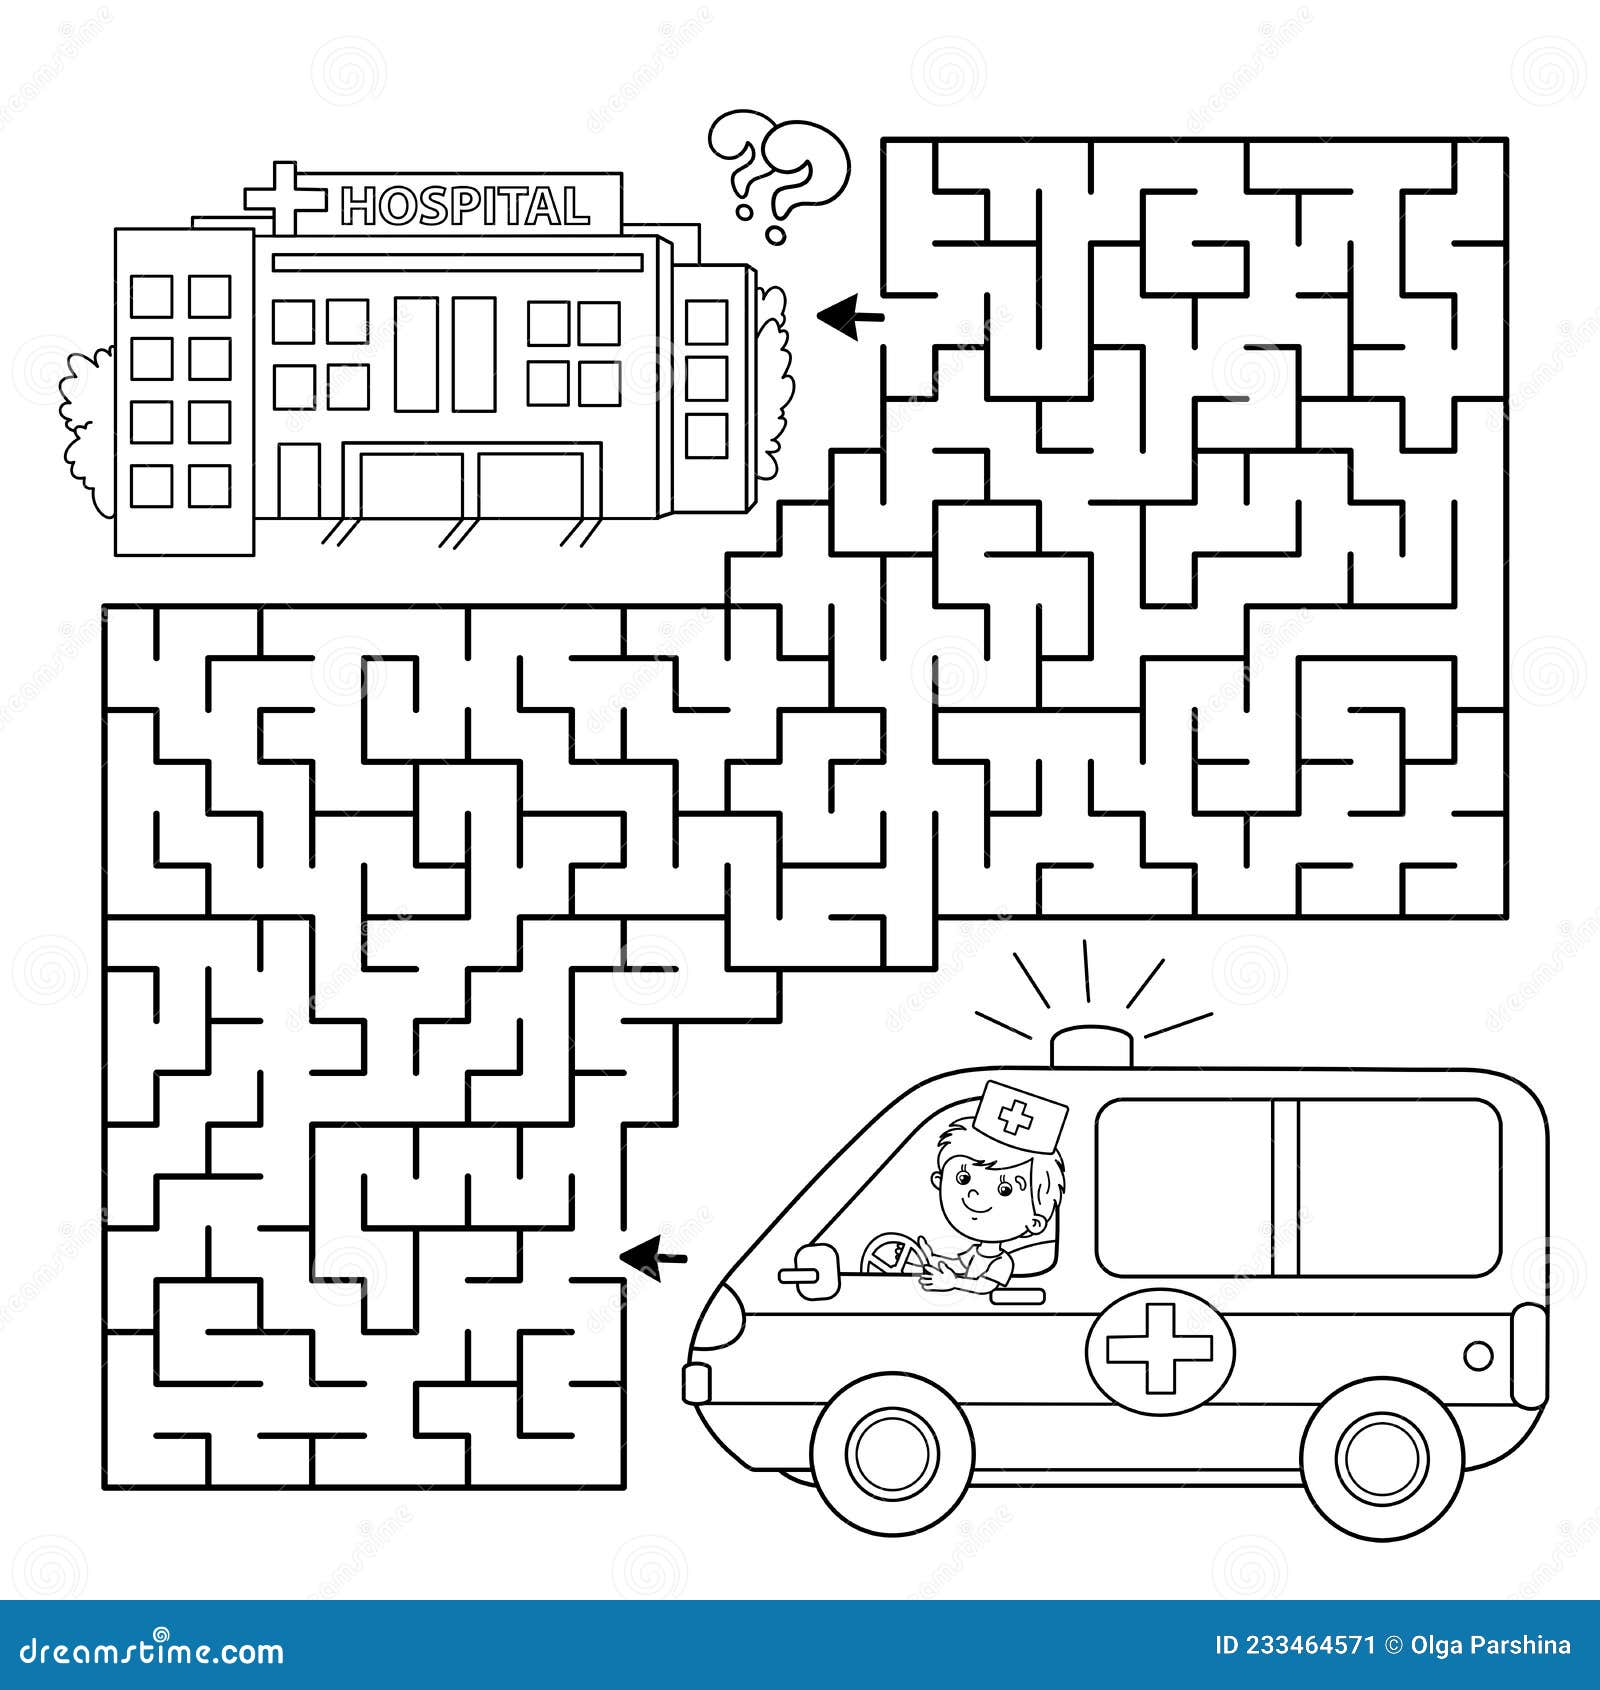 Labirinto hospital jogo para imprimir - Brinquedos de Papel